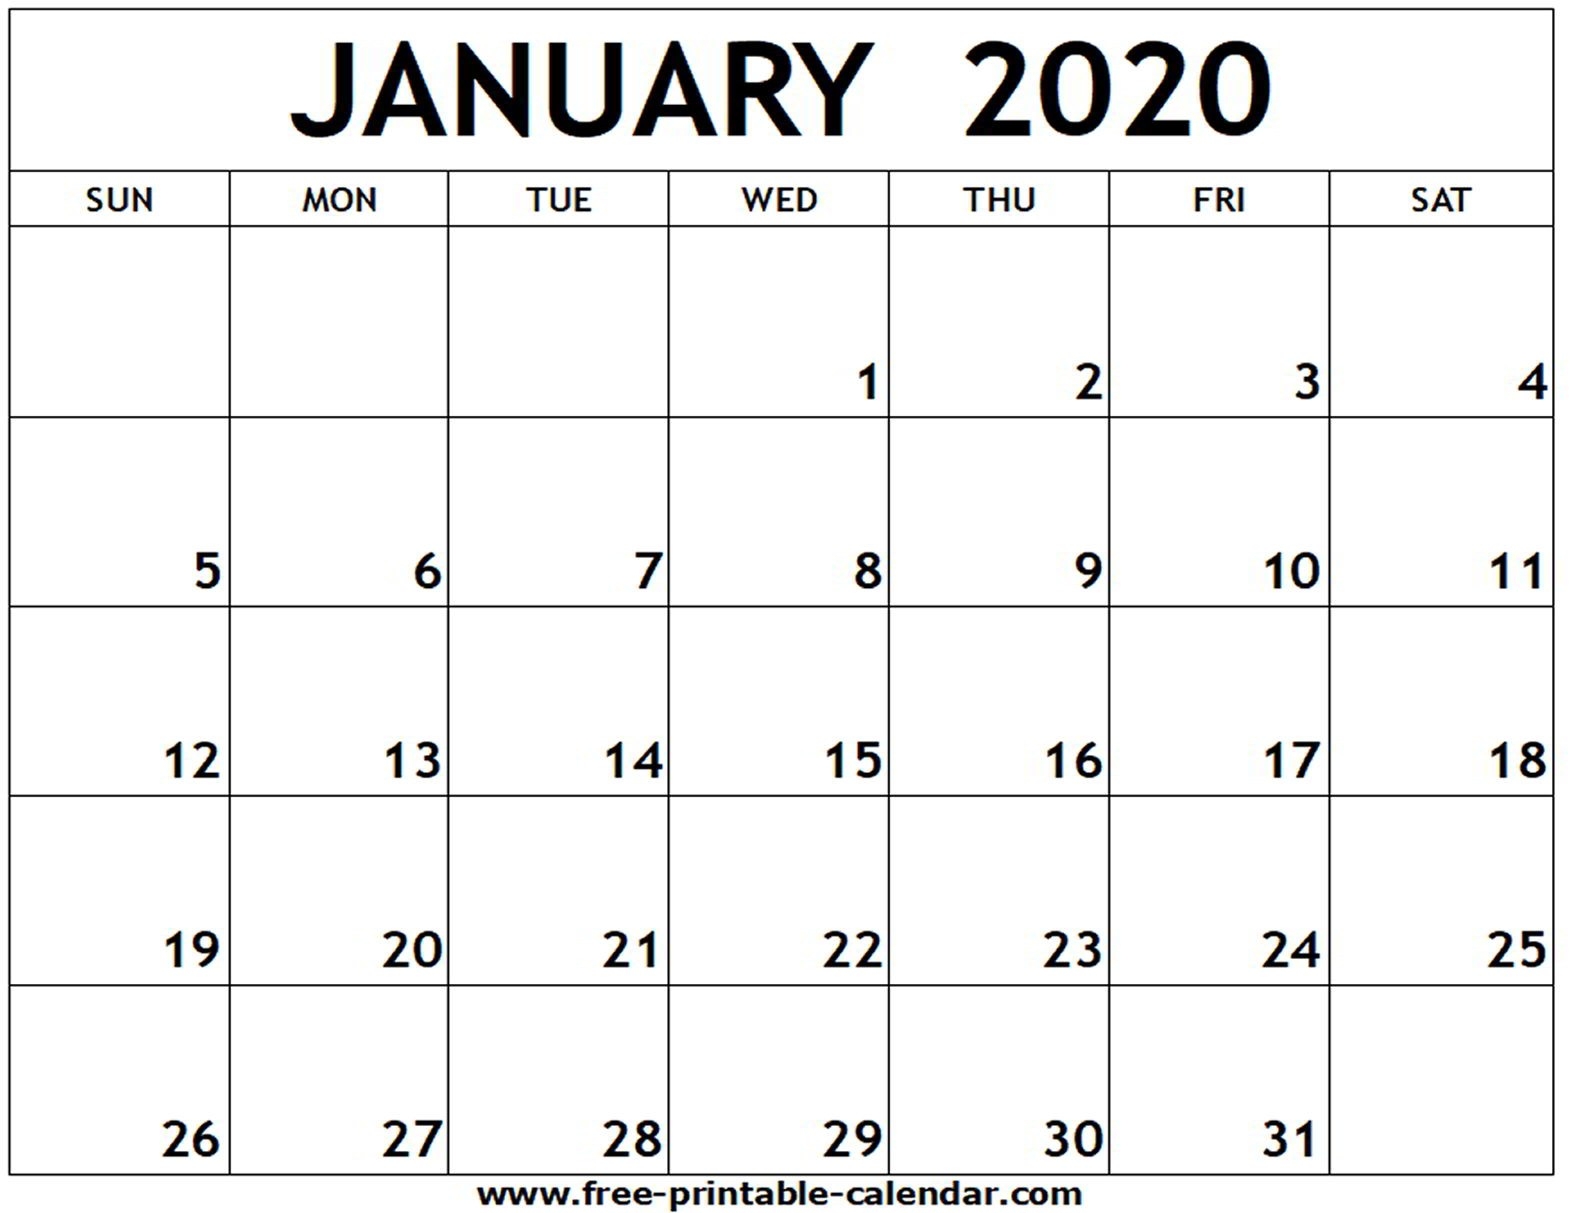 January 2020 Printable Calendar - Free-Printable-Calendar-January 2020 Calendar To Print